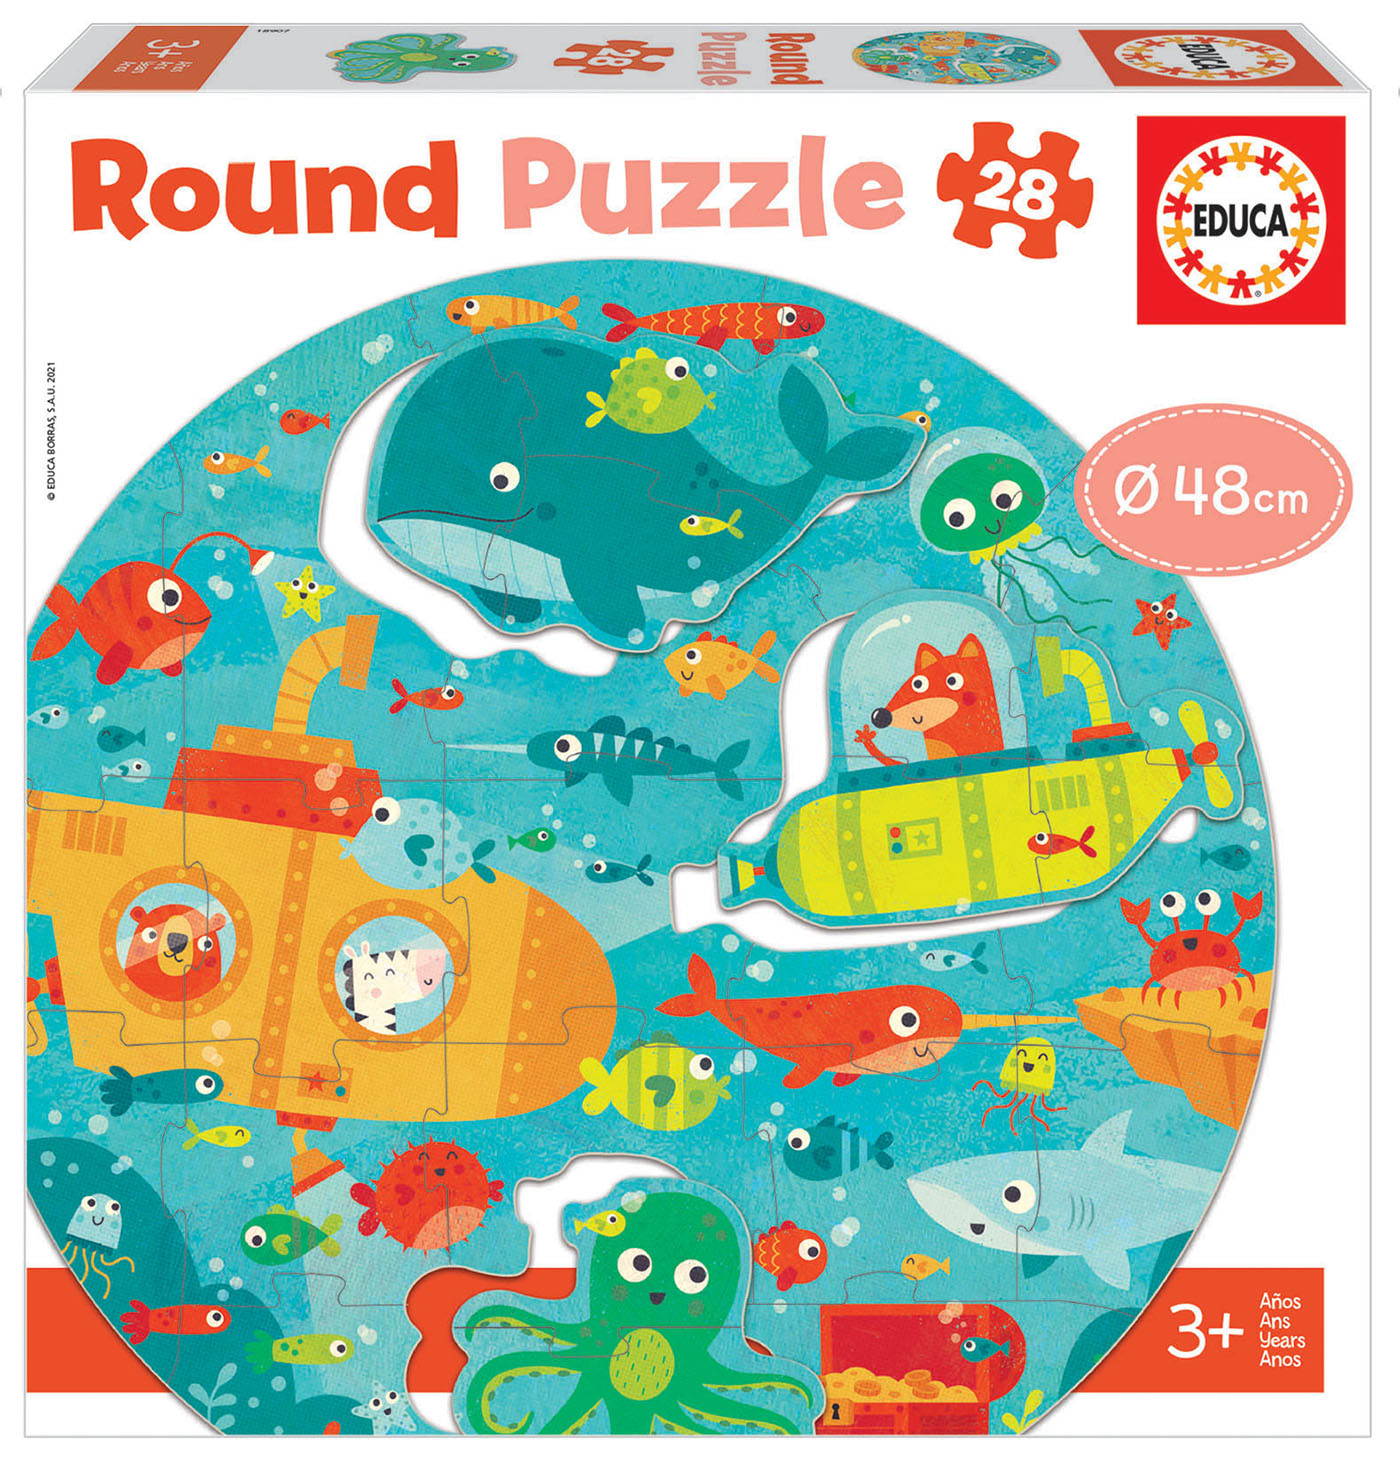 28 L'Espace Round Puzzle - Educa Borras